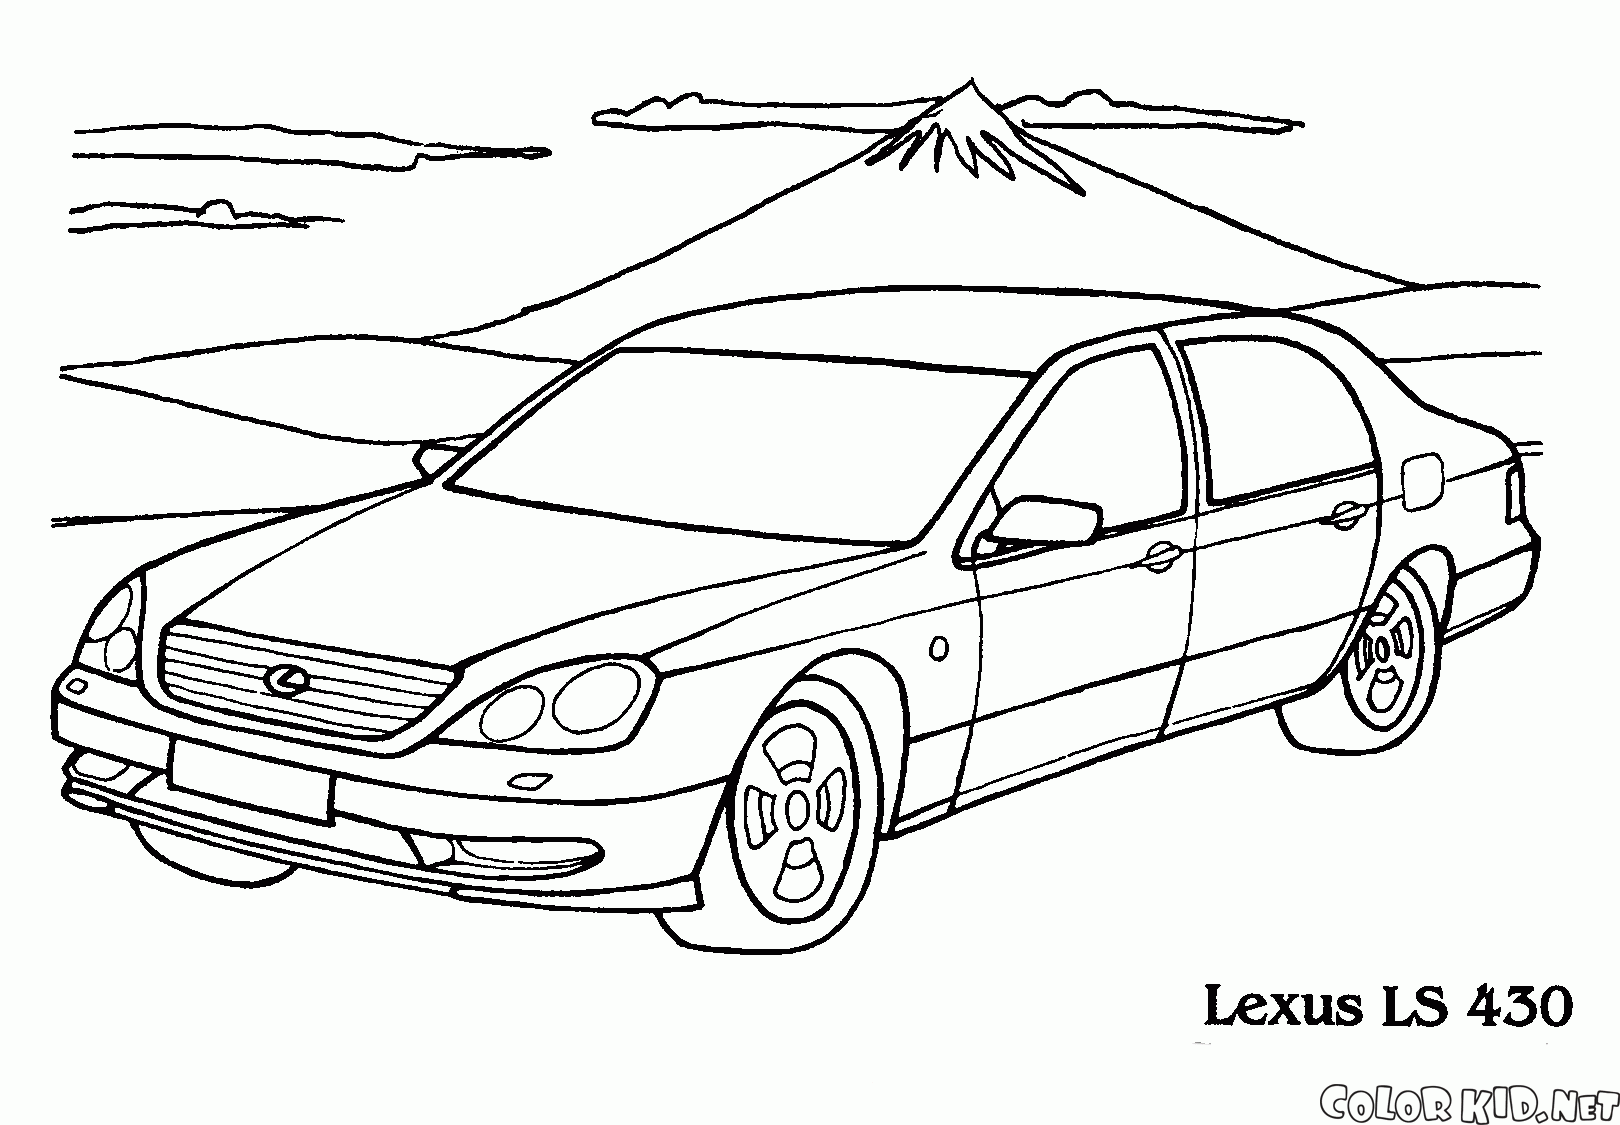 Komfortable Lexus LS 430